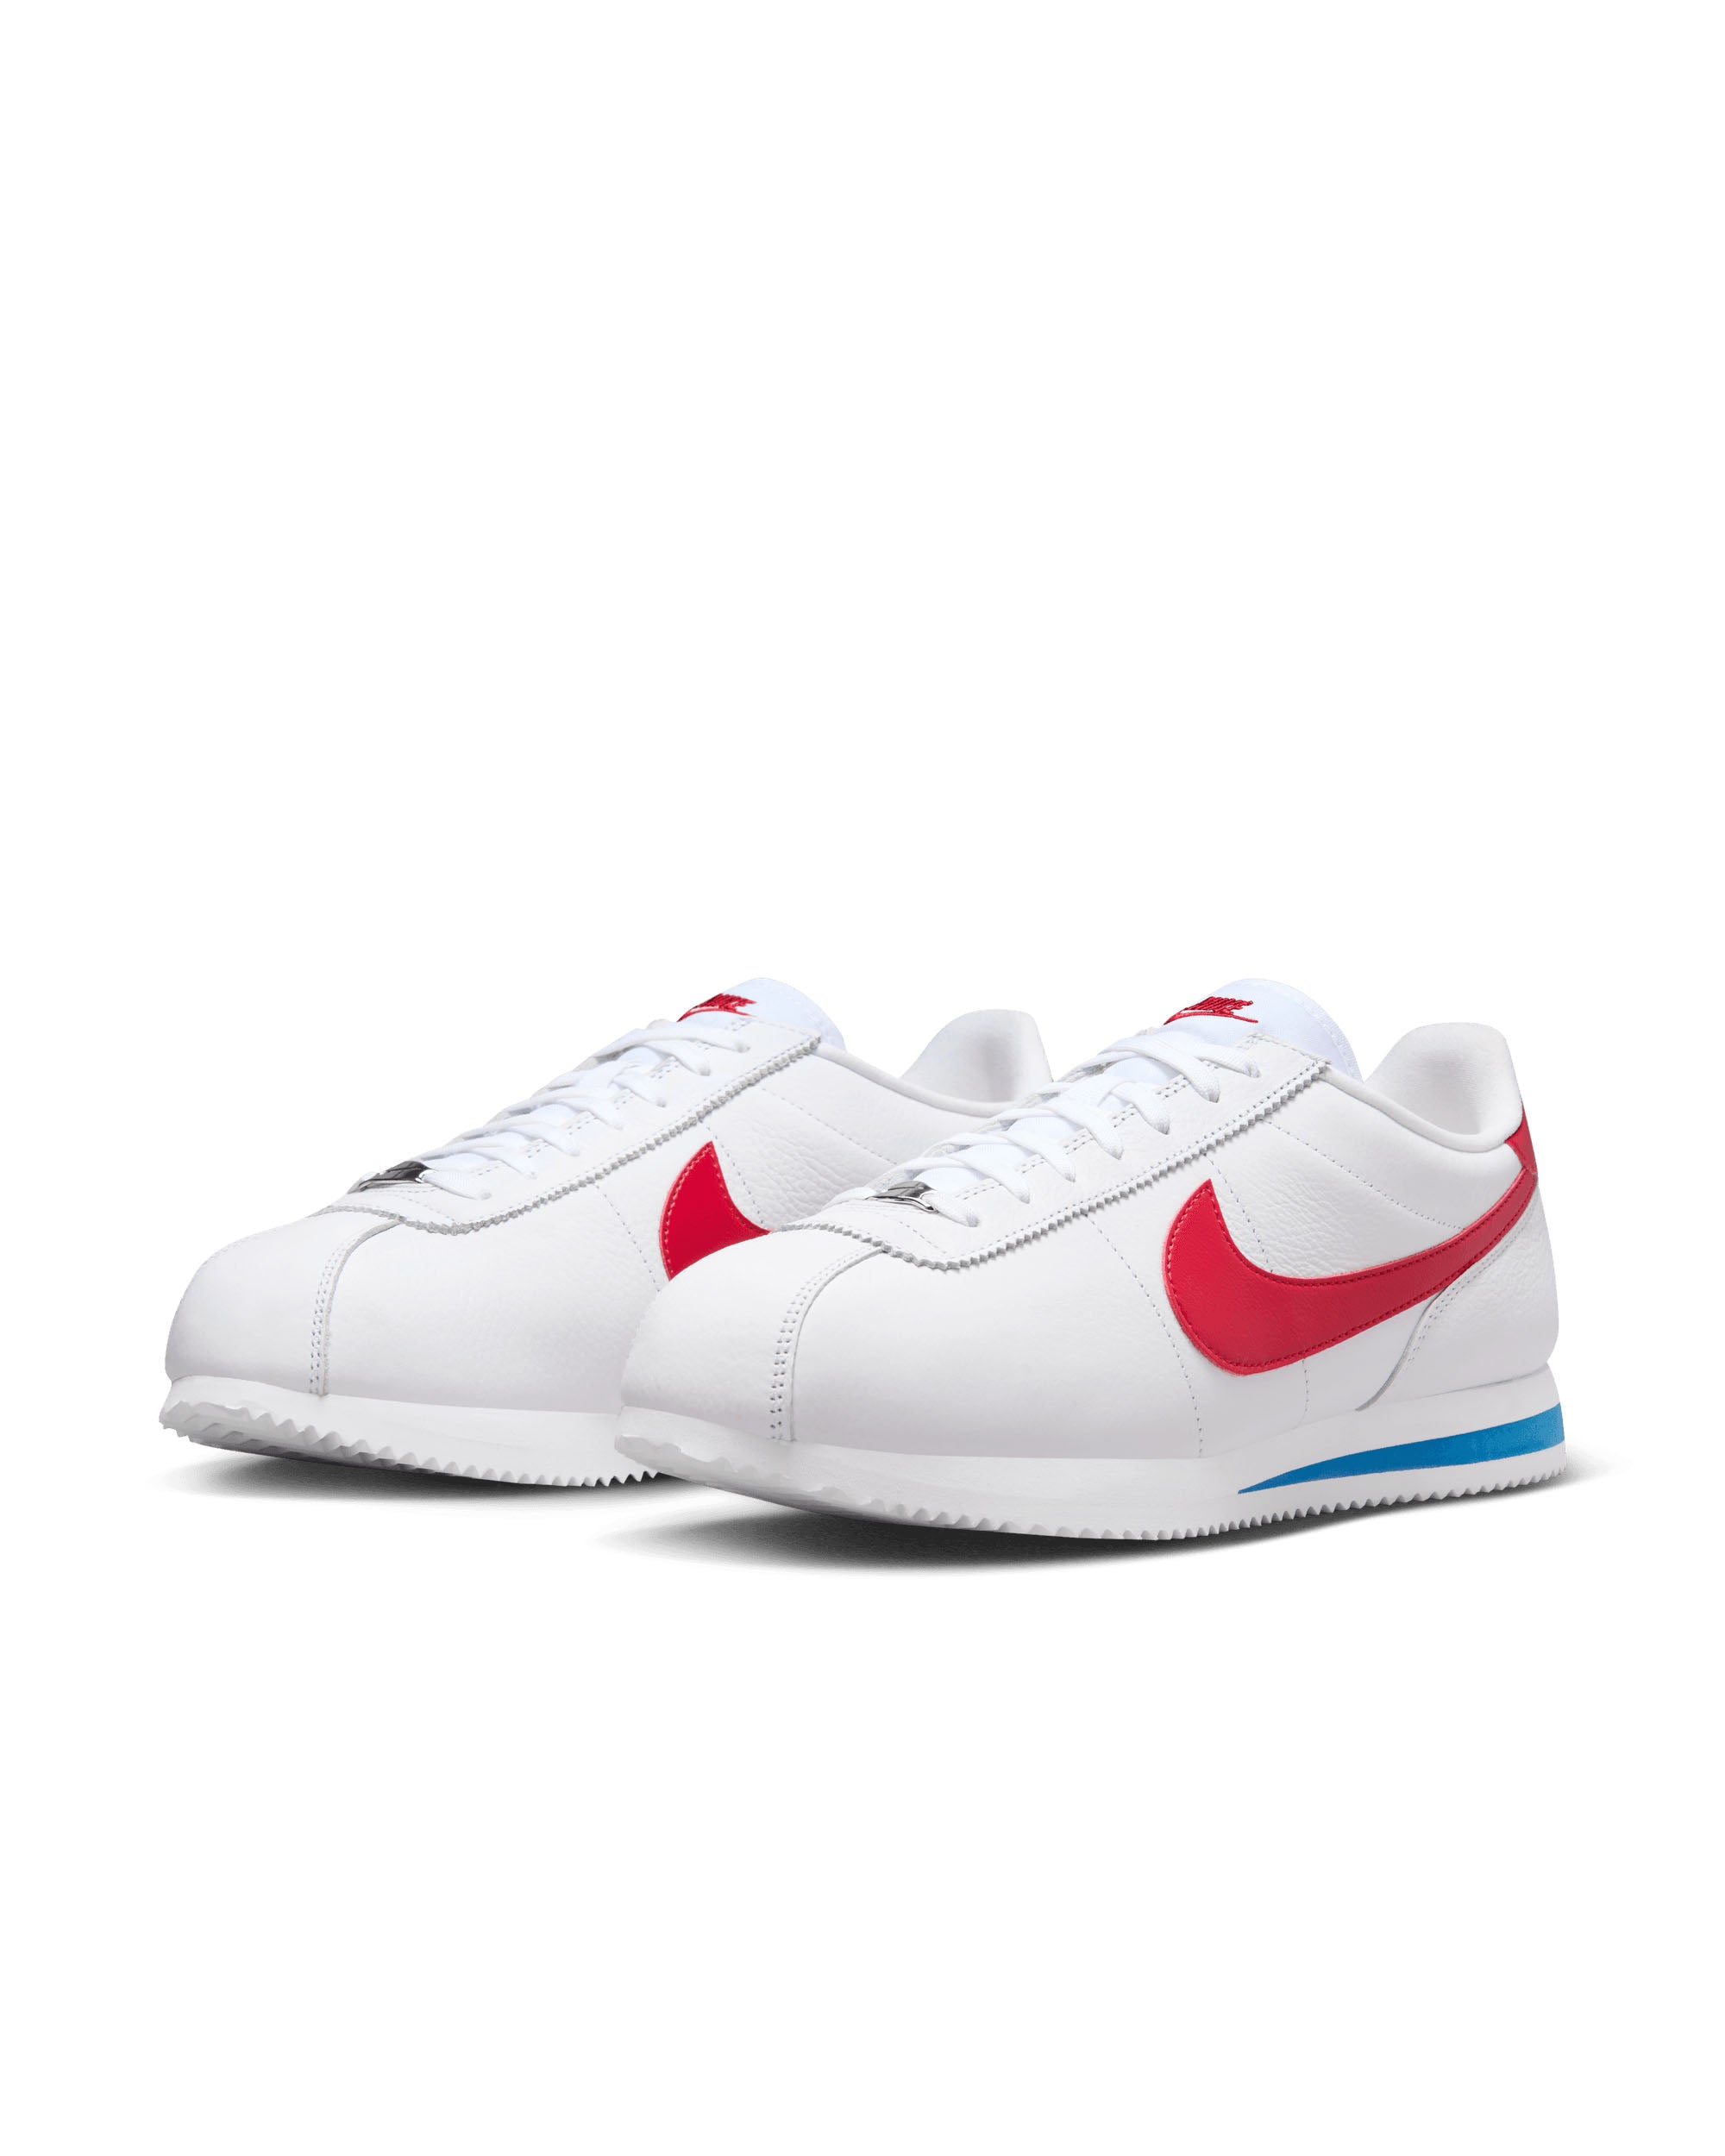 Nike Cortez - White / Varsity Red-Varsity Blue